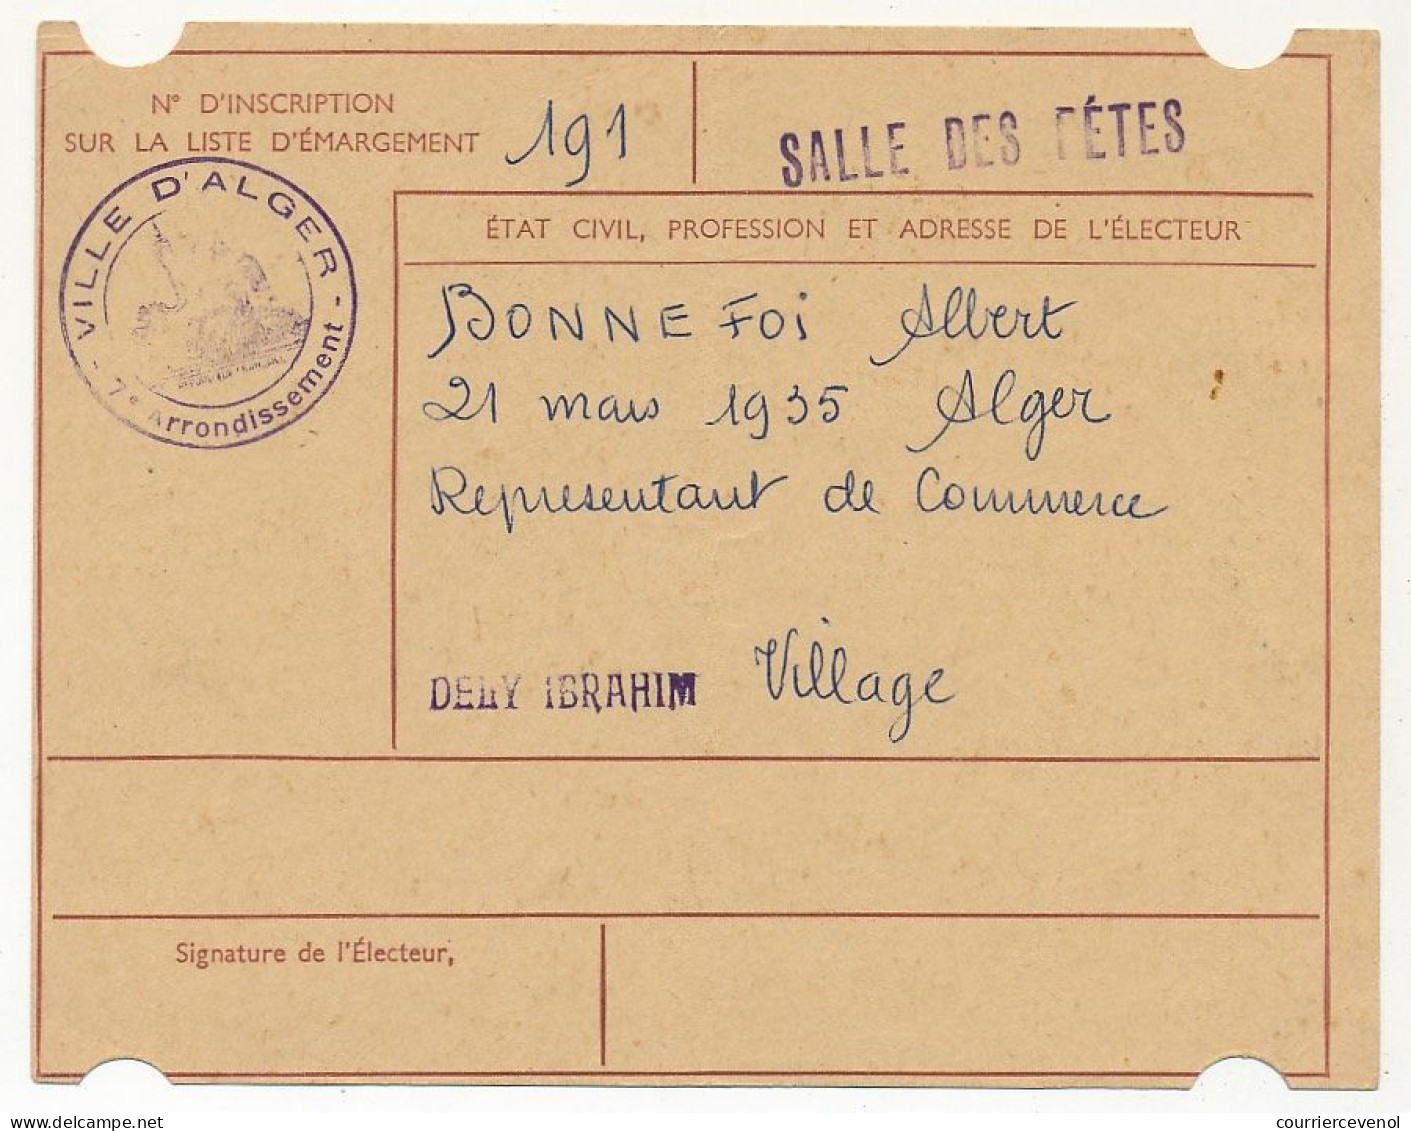 FRANCE / ALGERIE - Carte D'électeur X2 1959 - Algérie - Ville D'Alger, Salle Des Fêtes - (Couple) - Documents Historiques